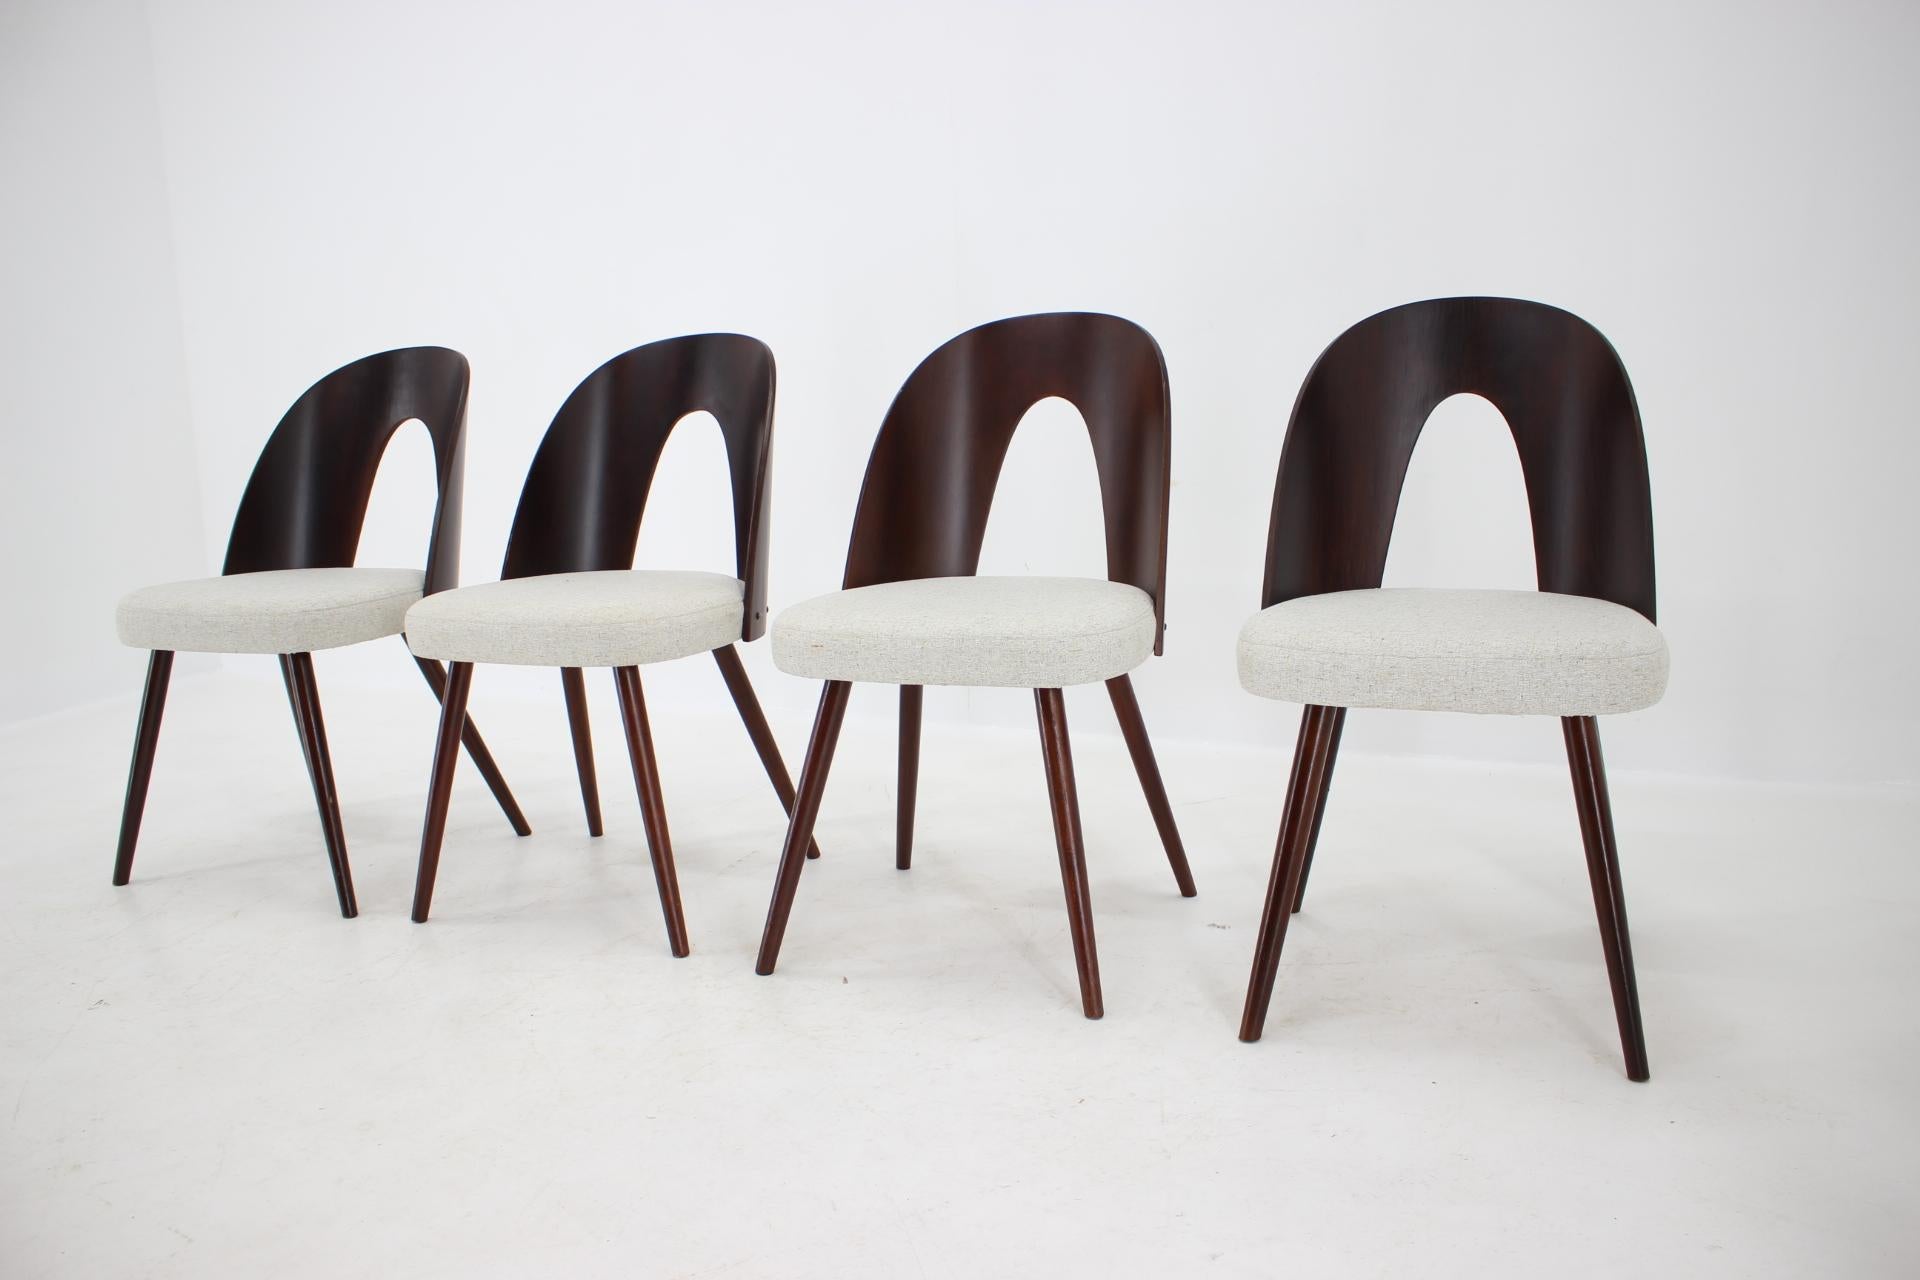 - Czechoslovakia, 1960s
- Maker: Ton, Bystrice pod Hostýnem
- Completely restored
- New upholstery
- 6 pieces altogether.